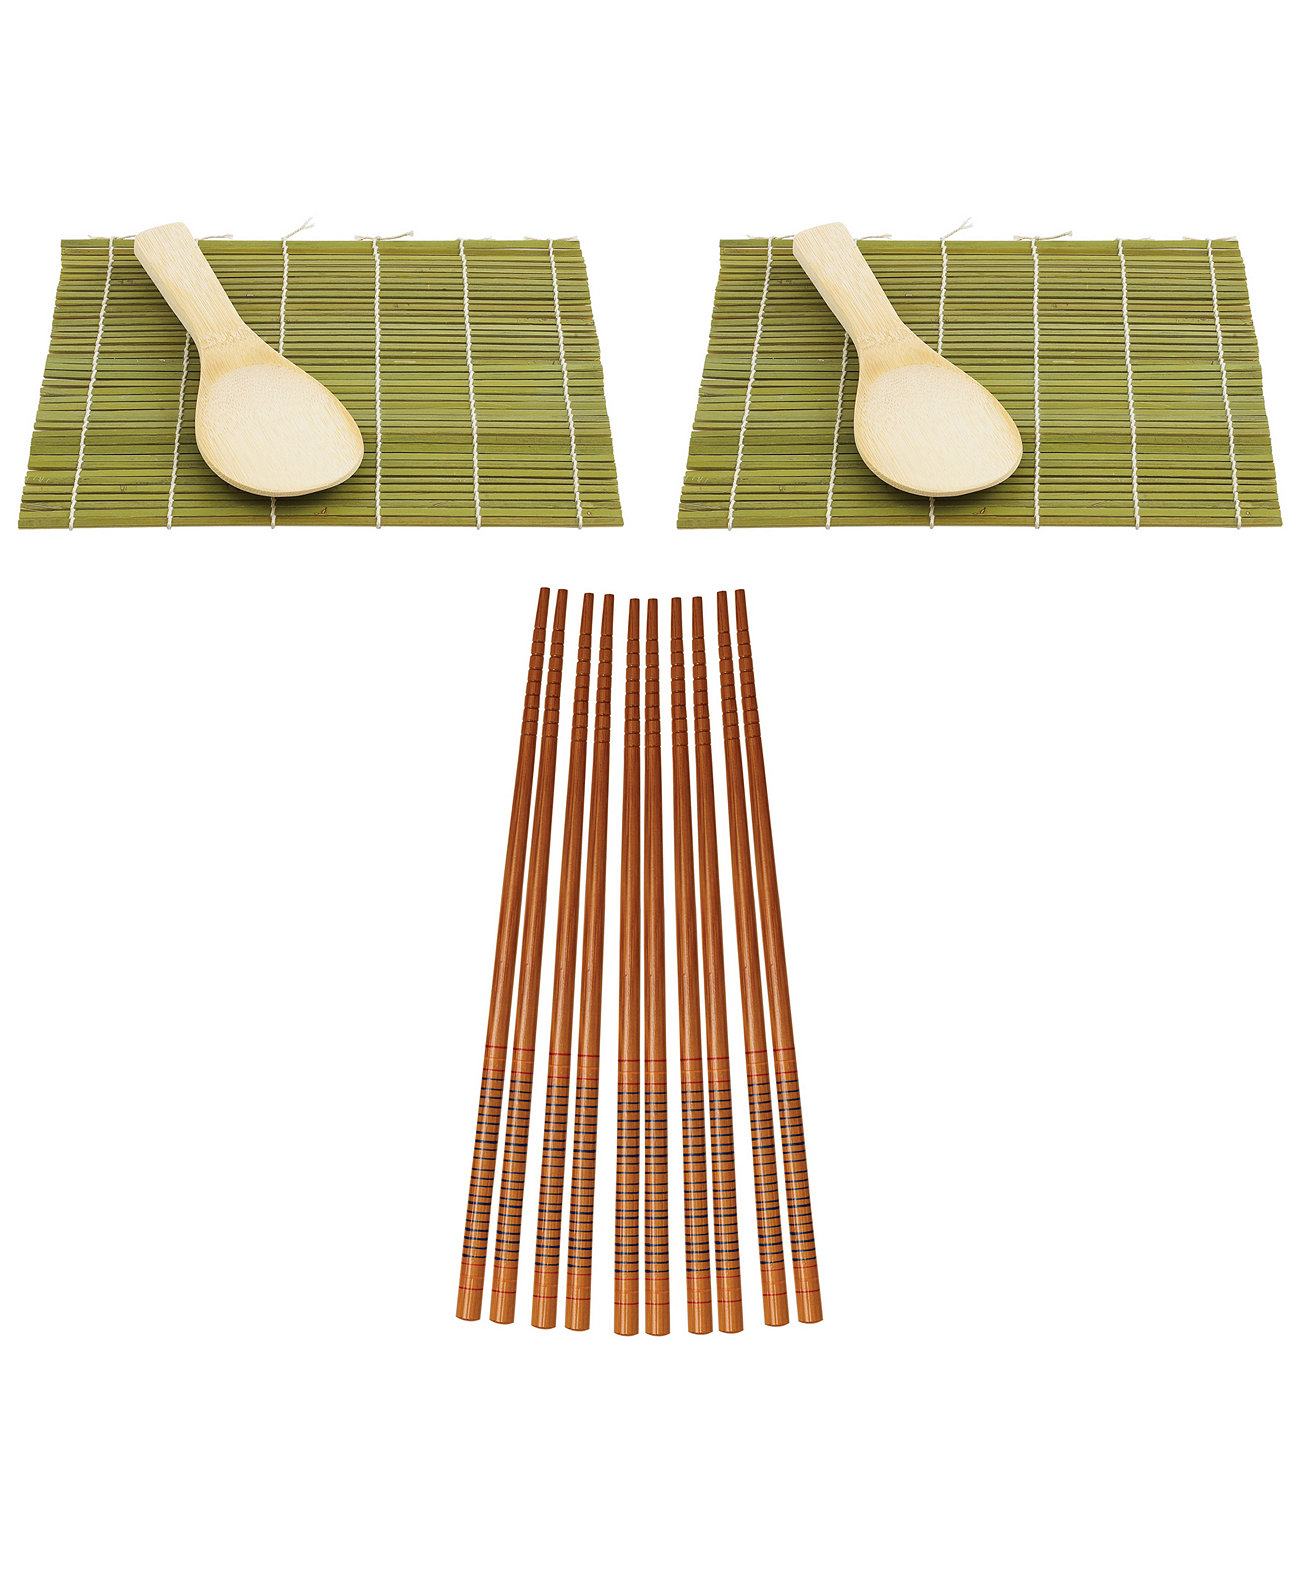 Набор роллов для суши Helen’s Asian Kitchen включает в себя 2 коврика для суши, 2 рисовые лопатки и 10 пар бамбуковых палочек для еды в шелковой упаковке. Helen's Asian Kitchen